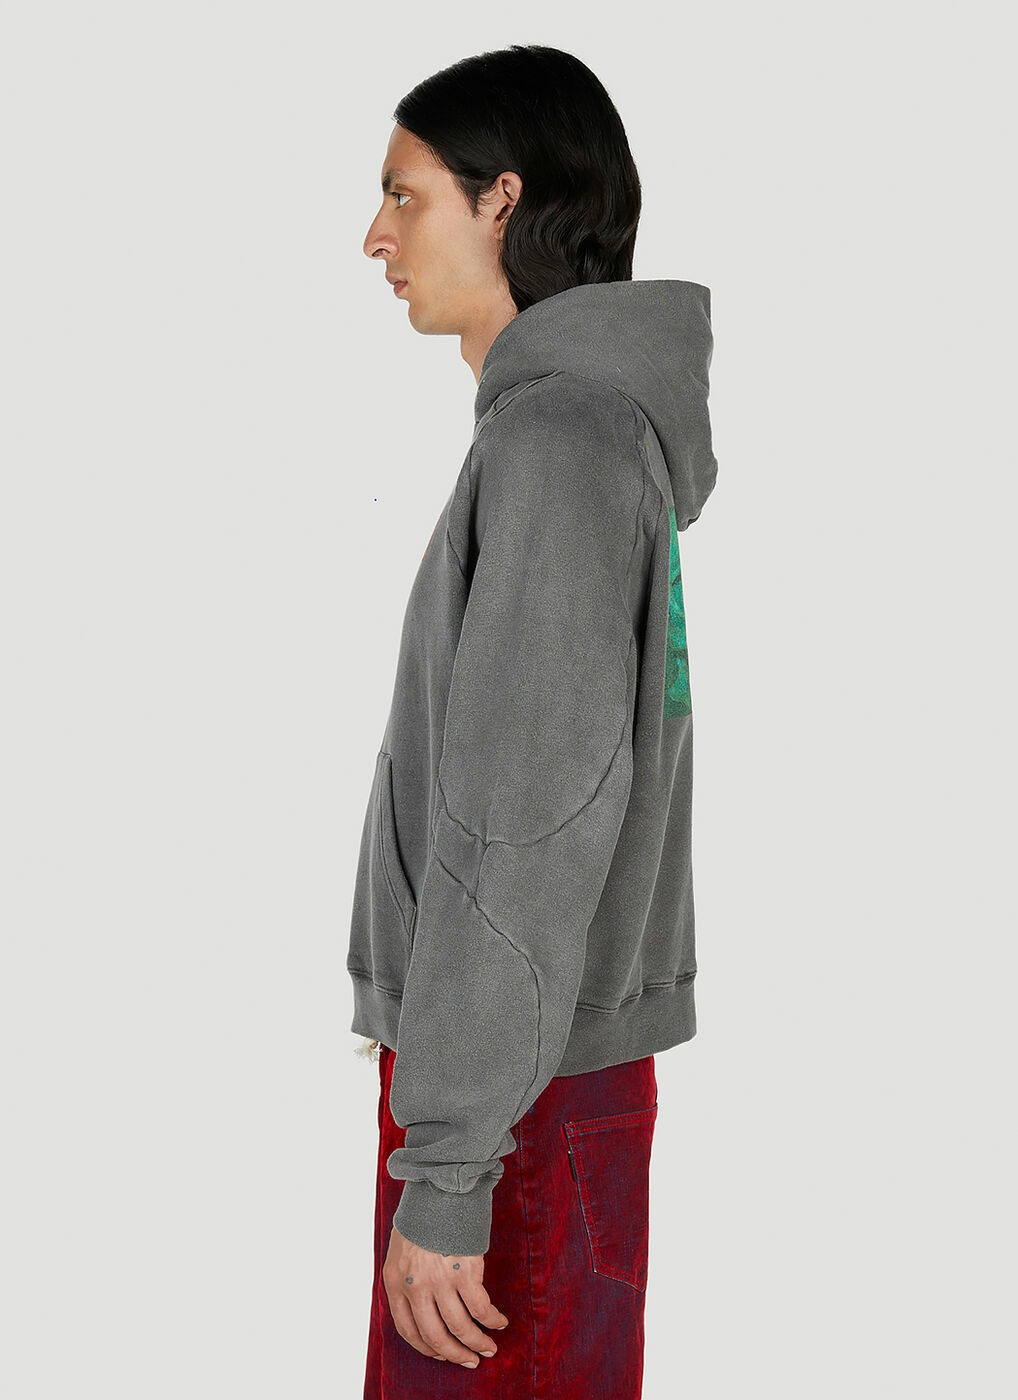 Ottolinger - x Brook Hsu Multiline Hooded Sweatshirt in Dark Grey